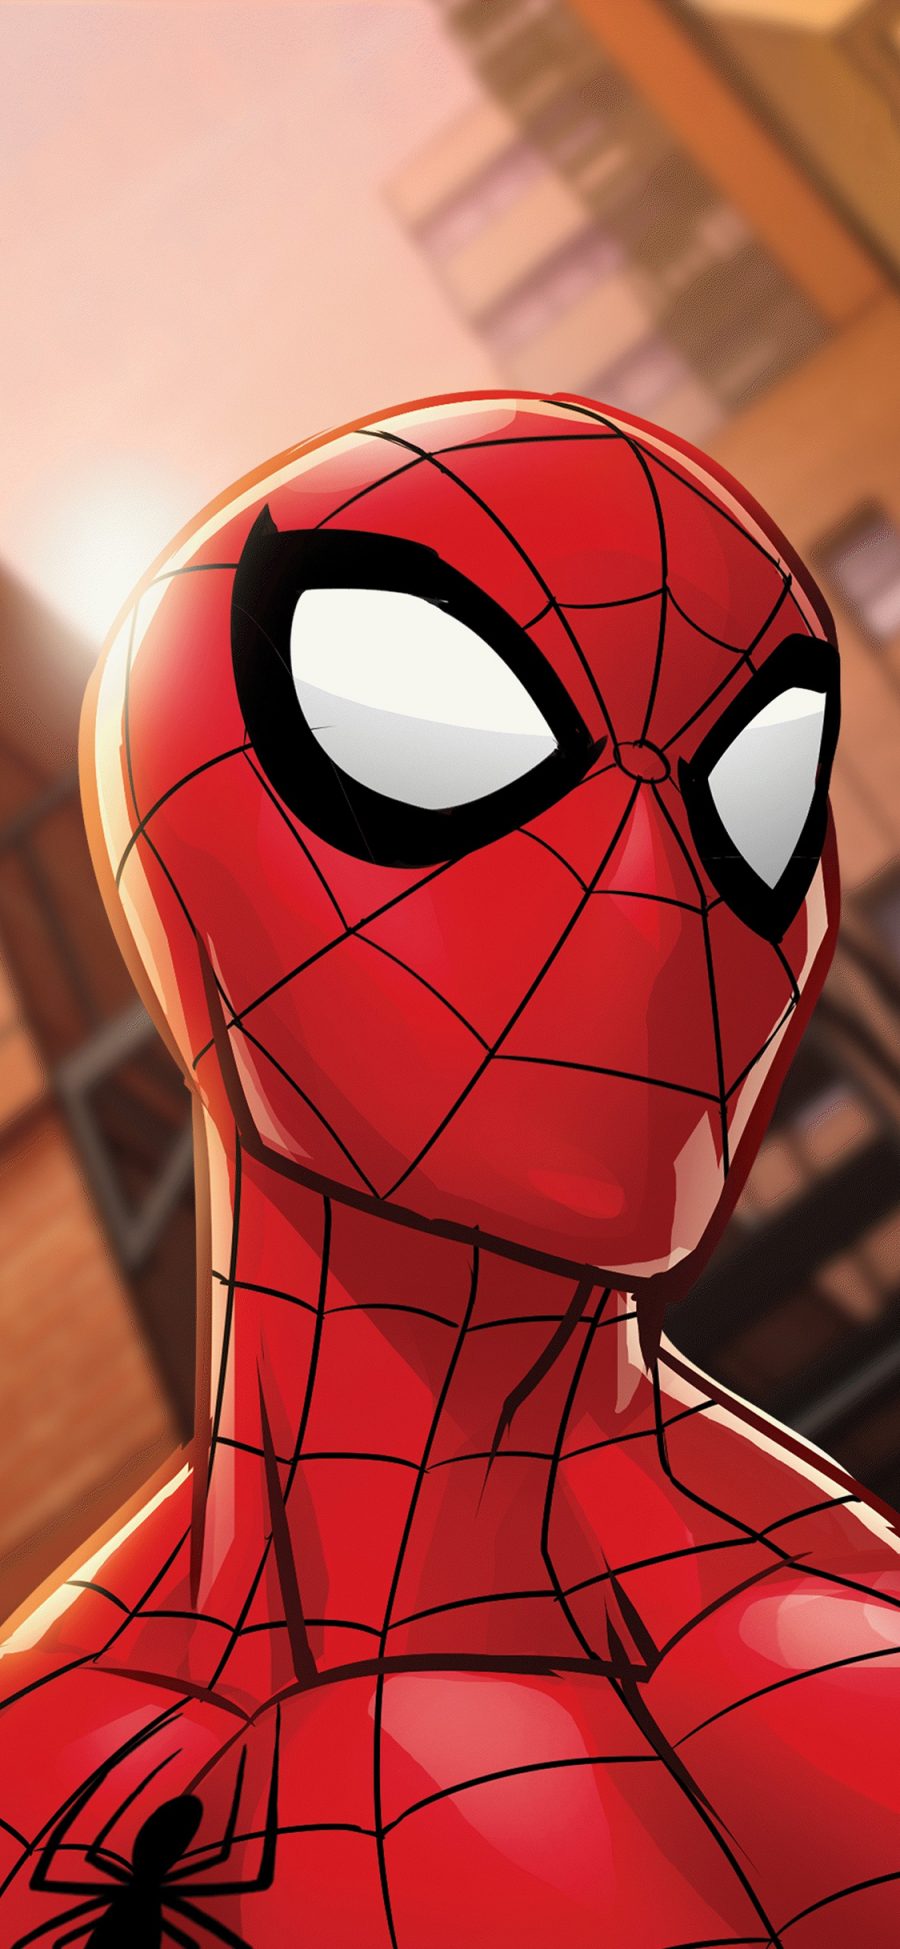 [2436×1125]蜘蛛侠 超级英雄 漫威 欧美 苹果手机动漫壁纸图片